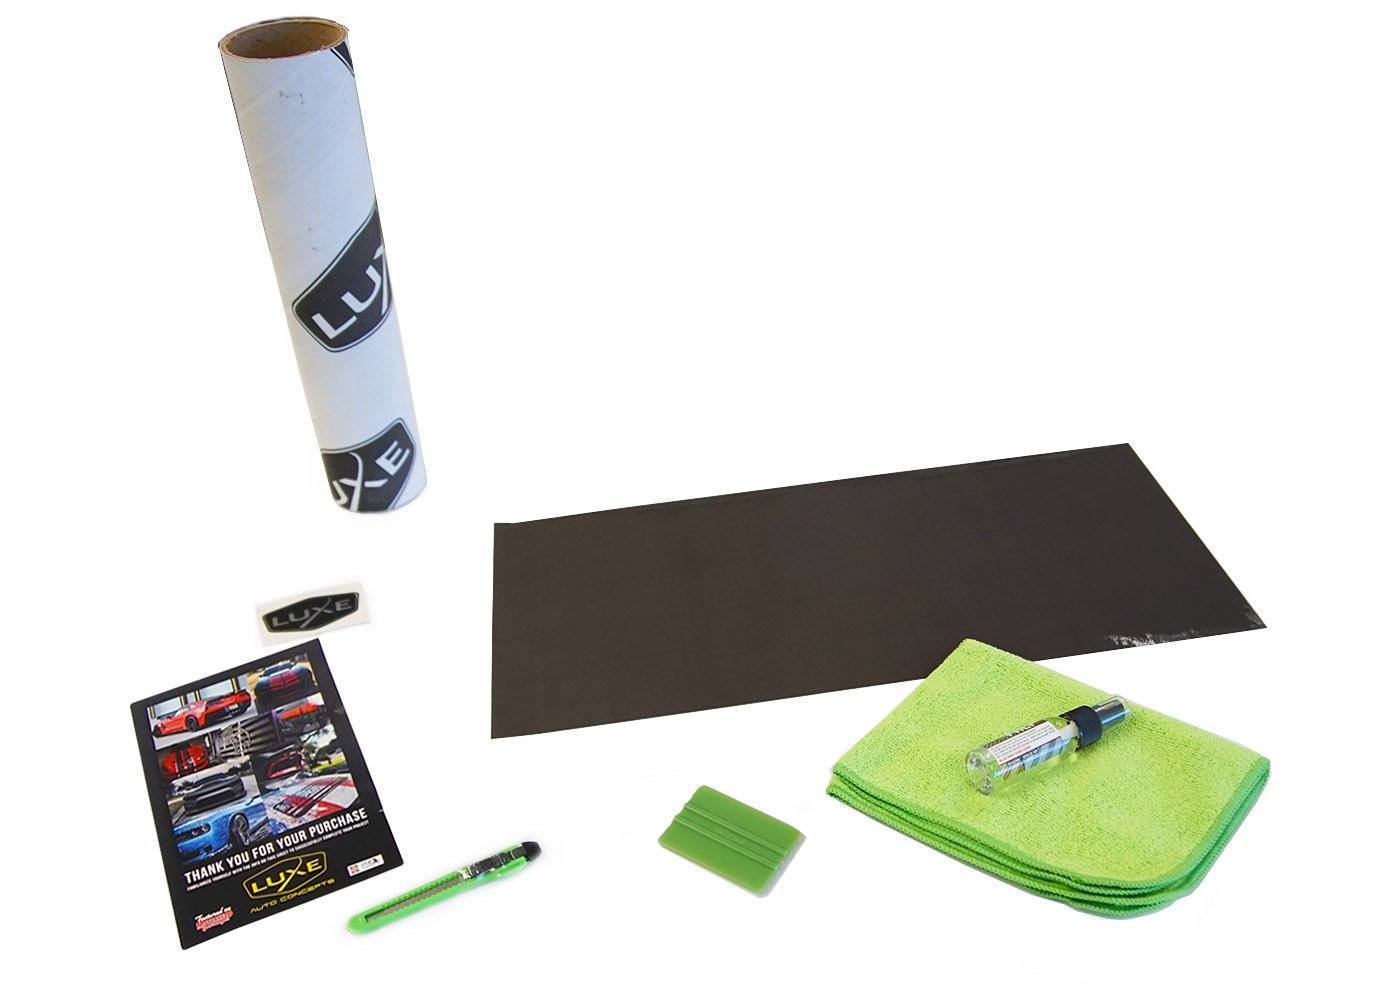 Gloss Smoke Luxe Tail Light Tint - Universal Kit